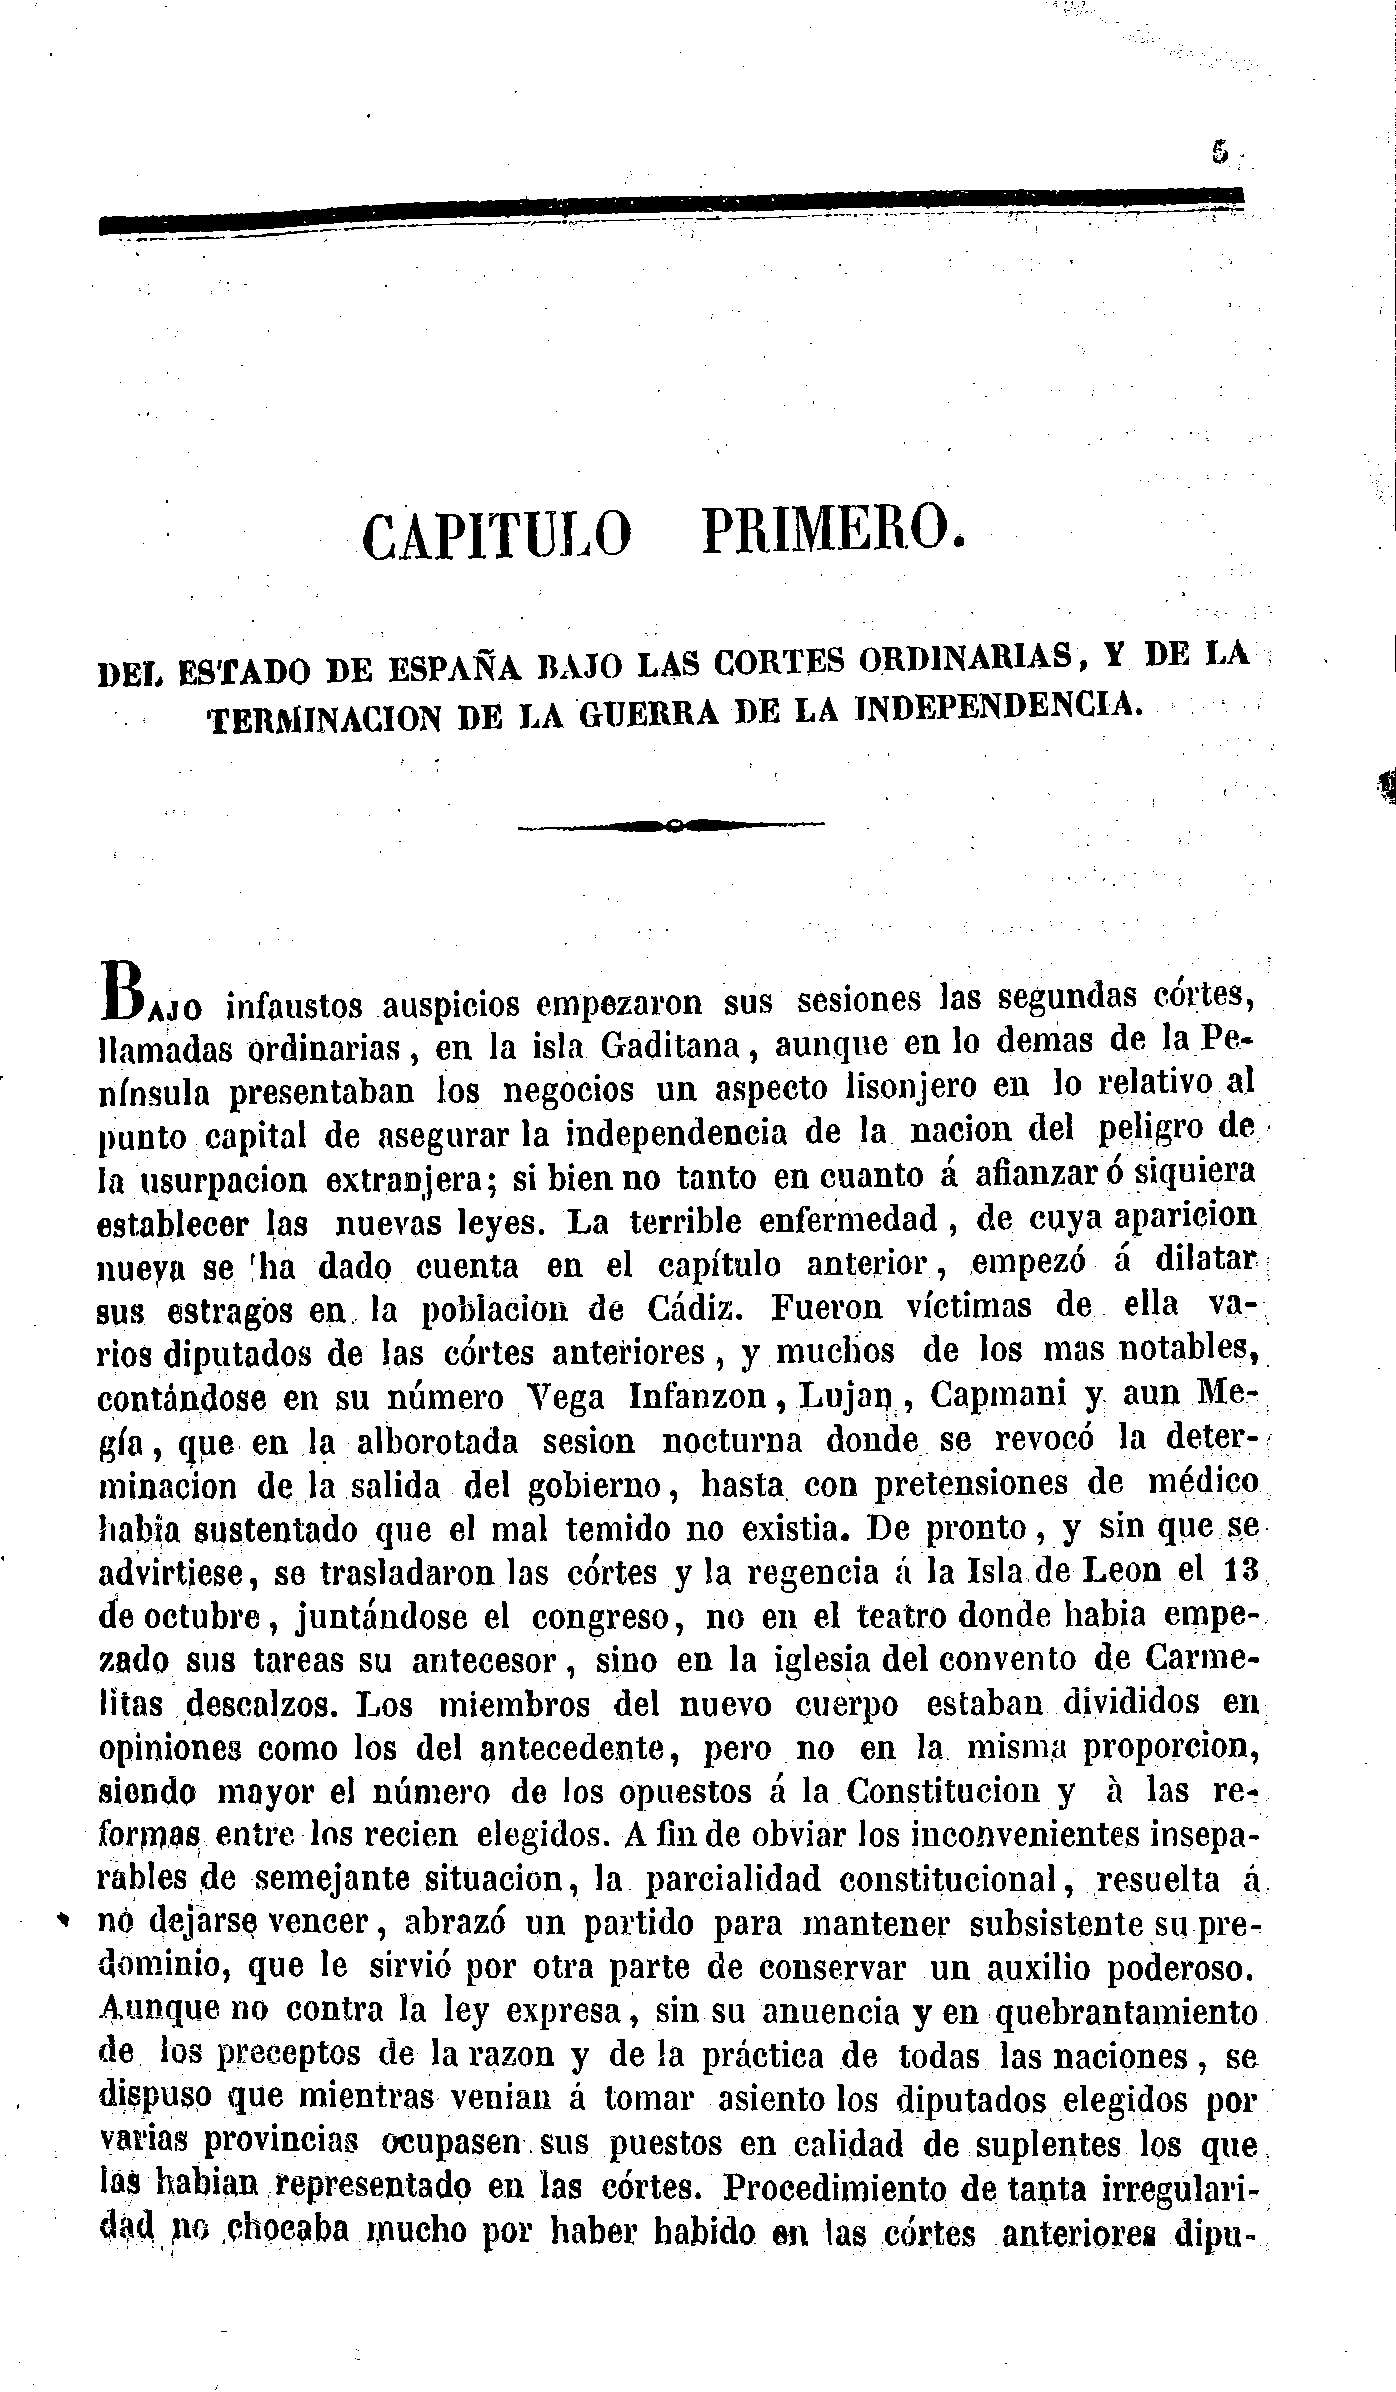 Capítulo Primero. Del Estado de España bajo las Cortes Ordinarias, y de la terminación de la Guerra de la Independencia